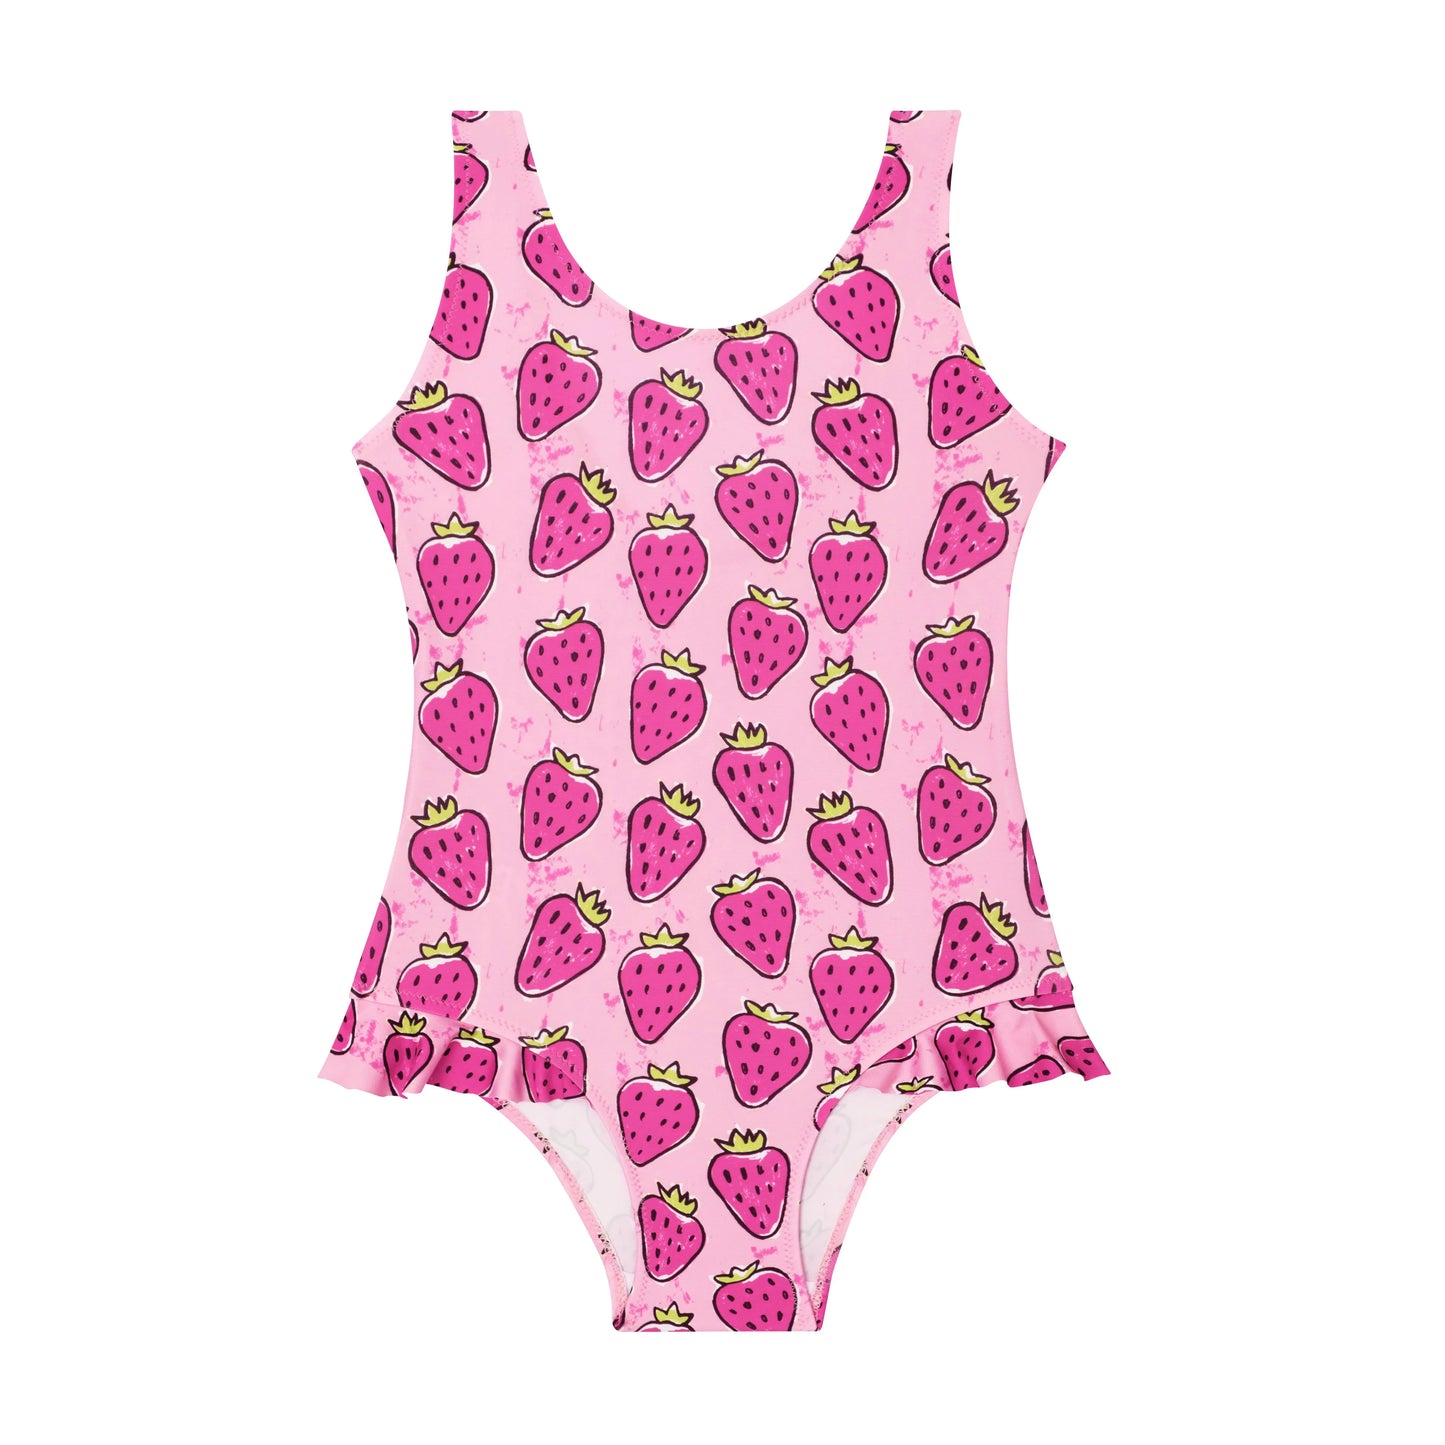 Slipfree Children's Swimsuit - Strawberries